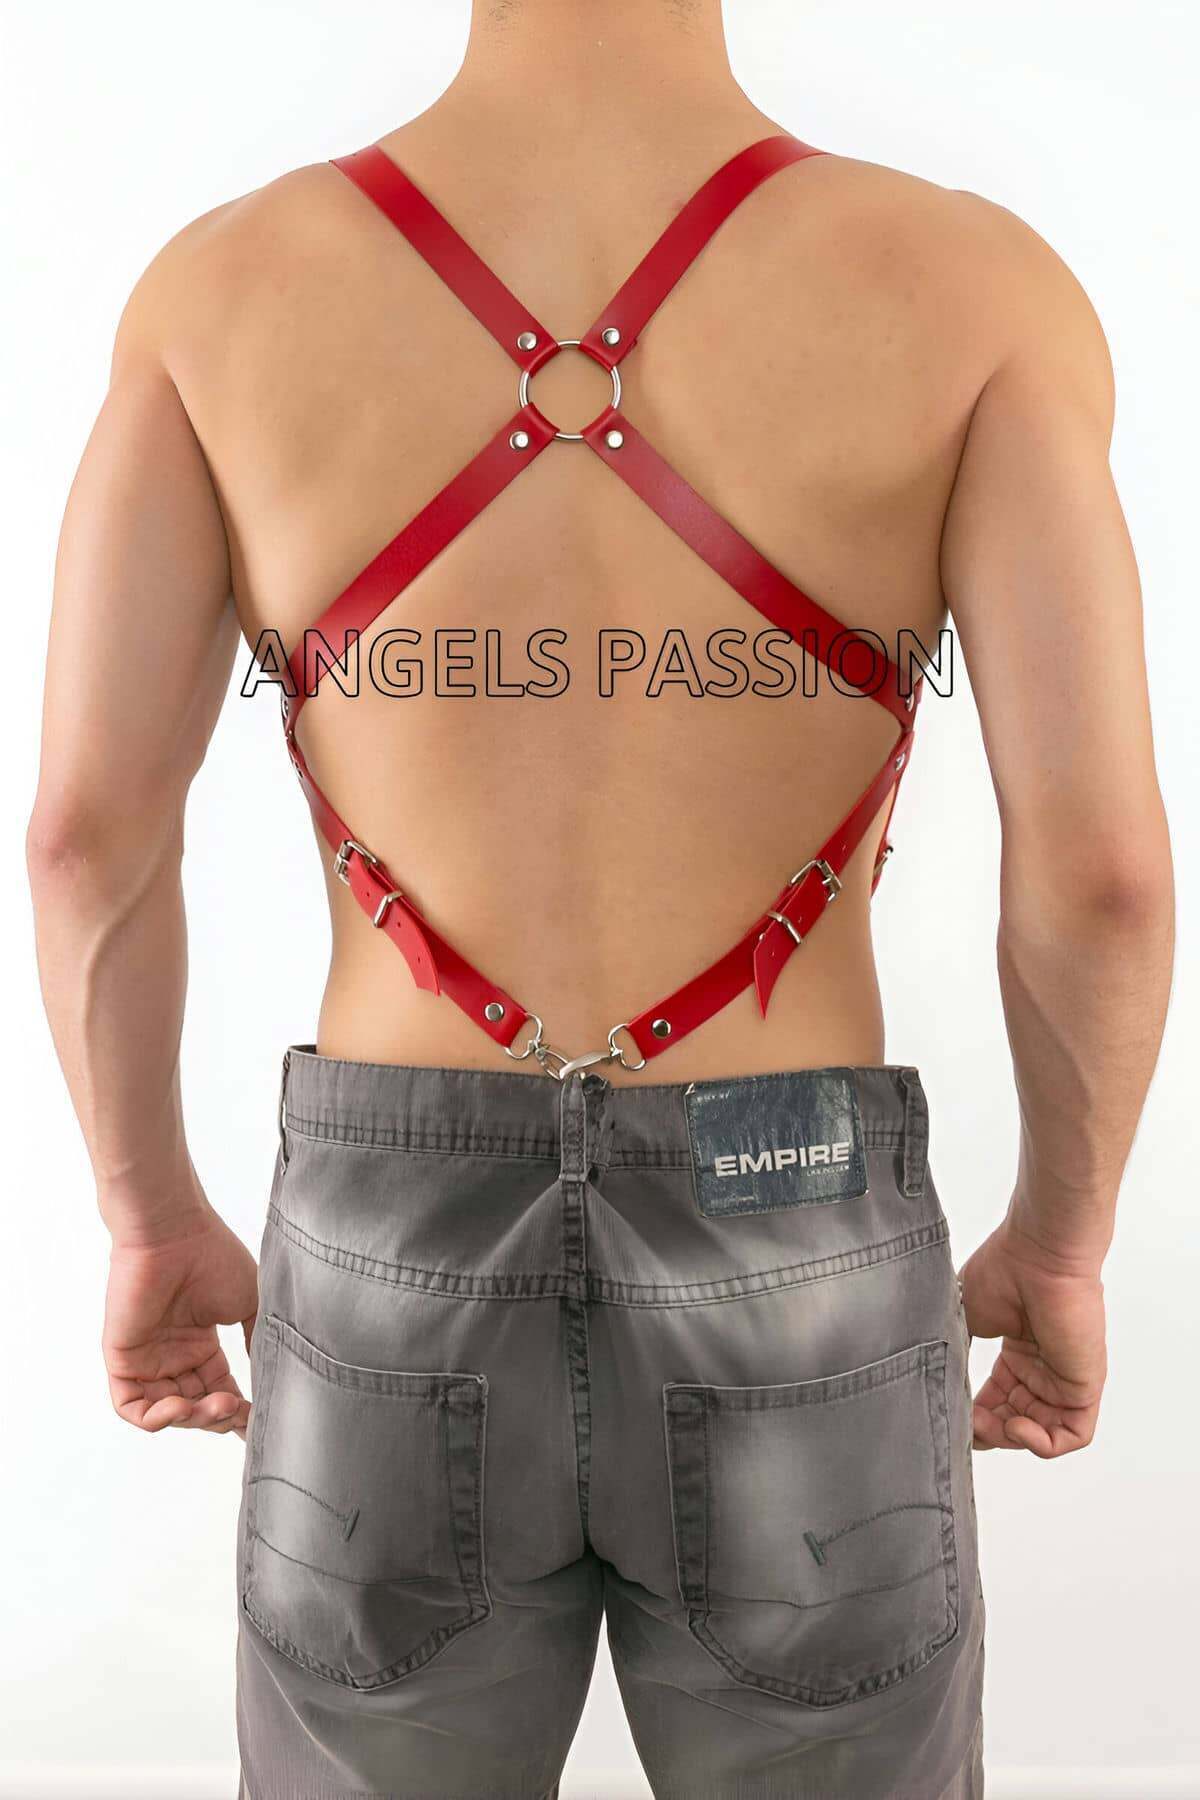 CLZ41 Deri Pantalona Bağlanan Seksi Erkek Harness - Ürün Rengi:Kırmızı